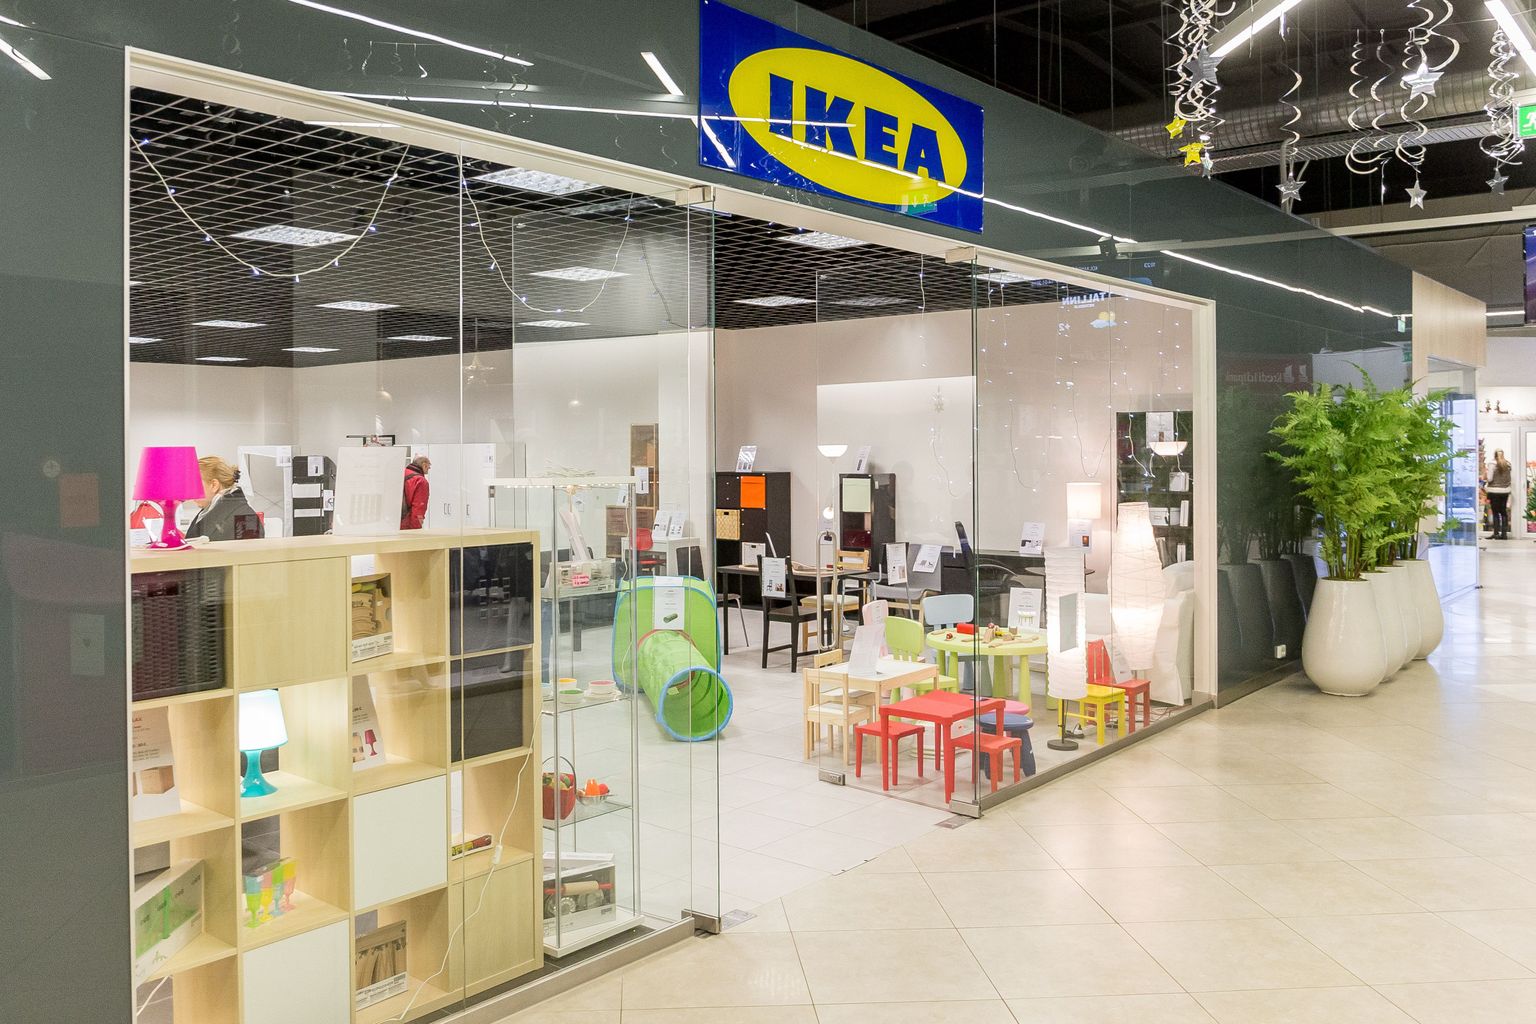 Idakeskuses tegutseb IKEA sildiga pood, mille juhataja ei teadnud, et ta ei või kaupa niisama müüa.